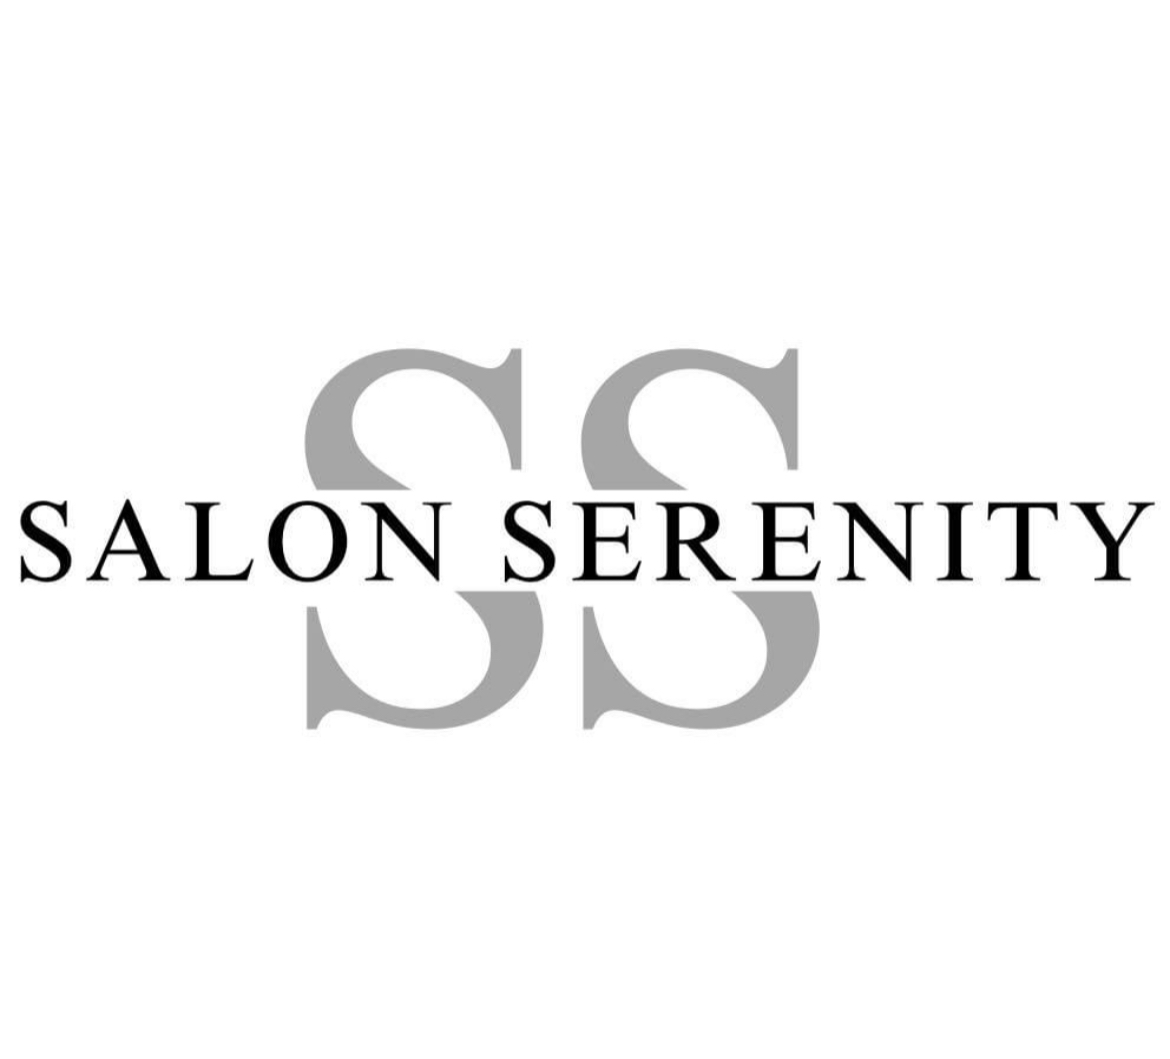 Salon Serenity 284 Monponsett St # 206, Halifax Massachusetts 02338